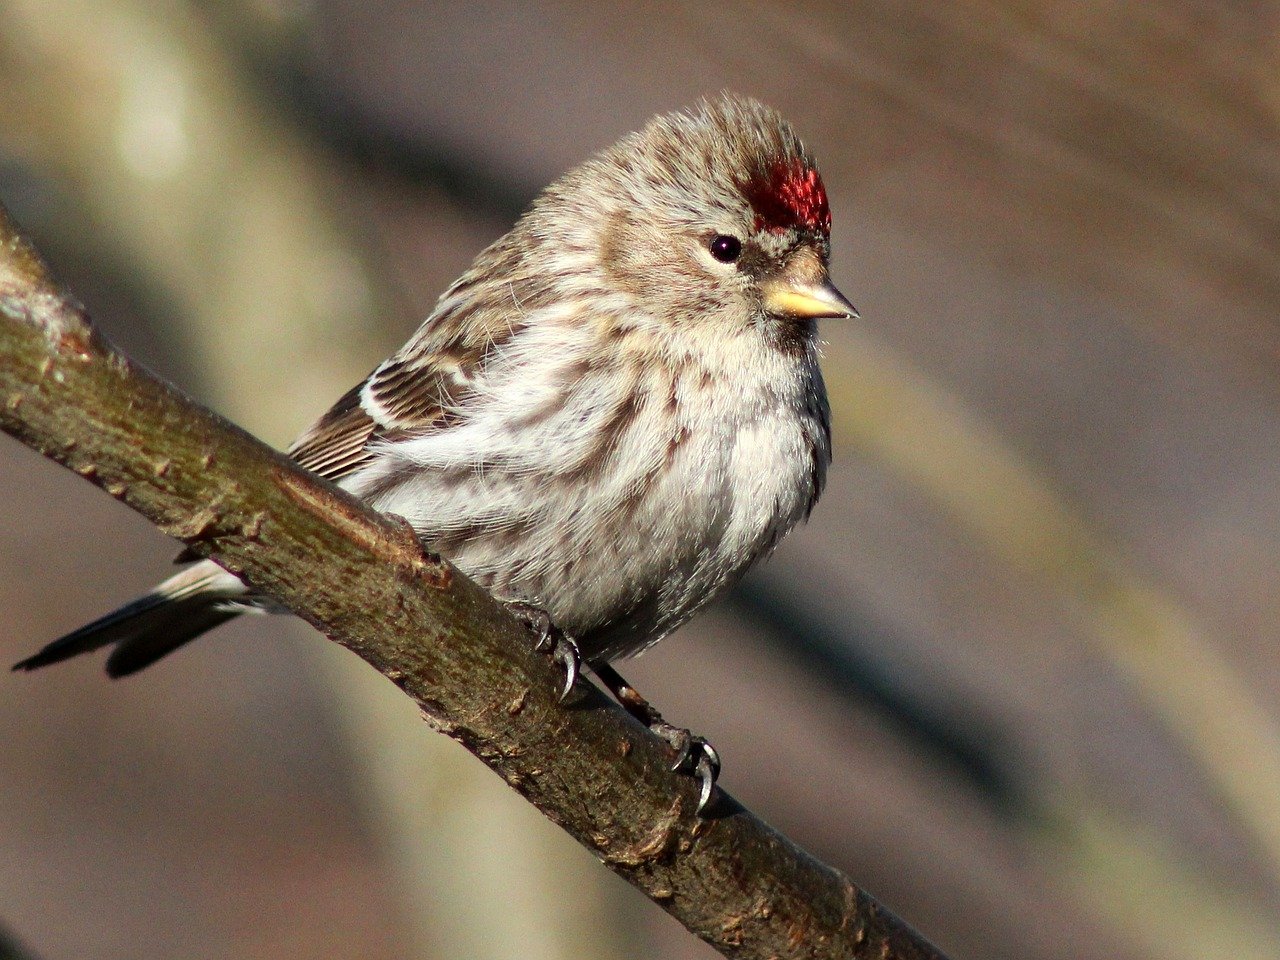 5 Top Tips For Winter Bird Feeders – But Beware of Sick Birds